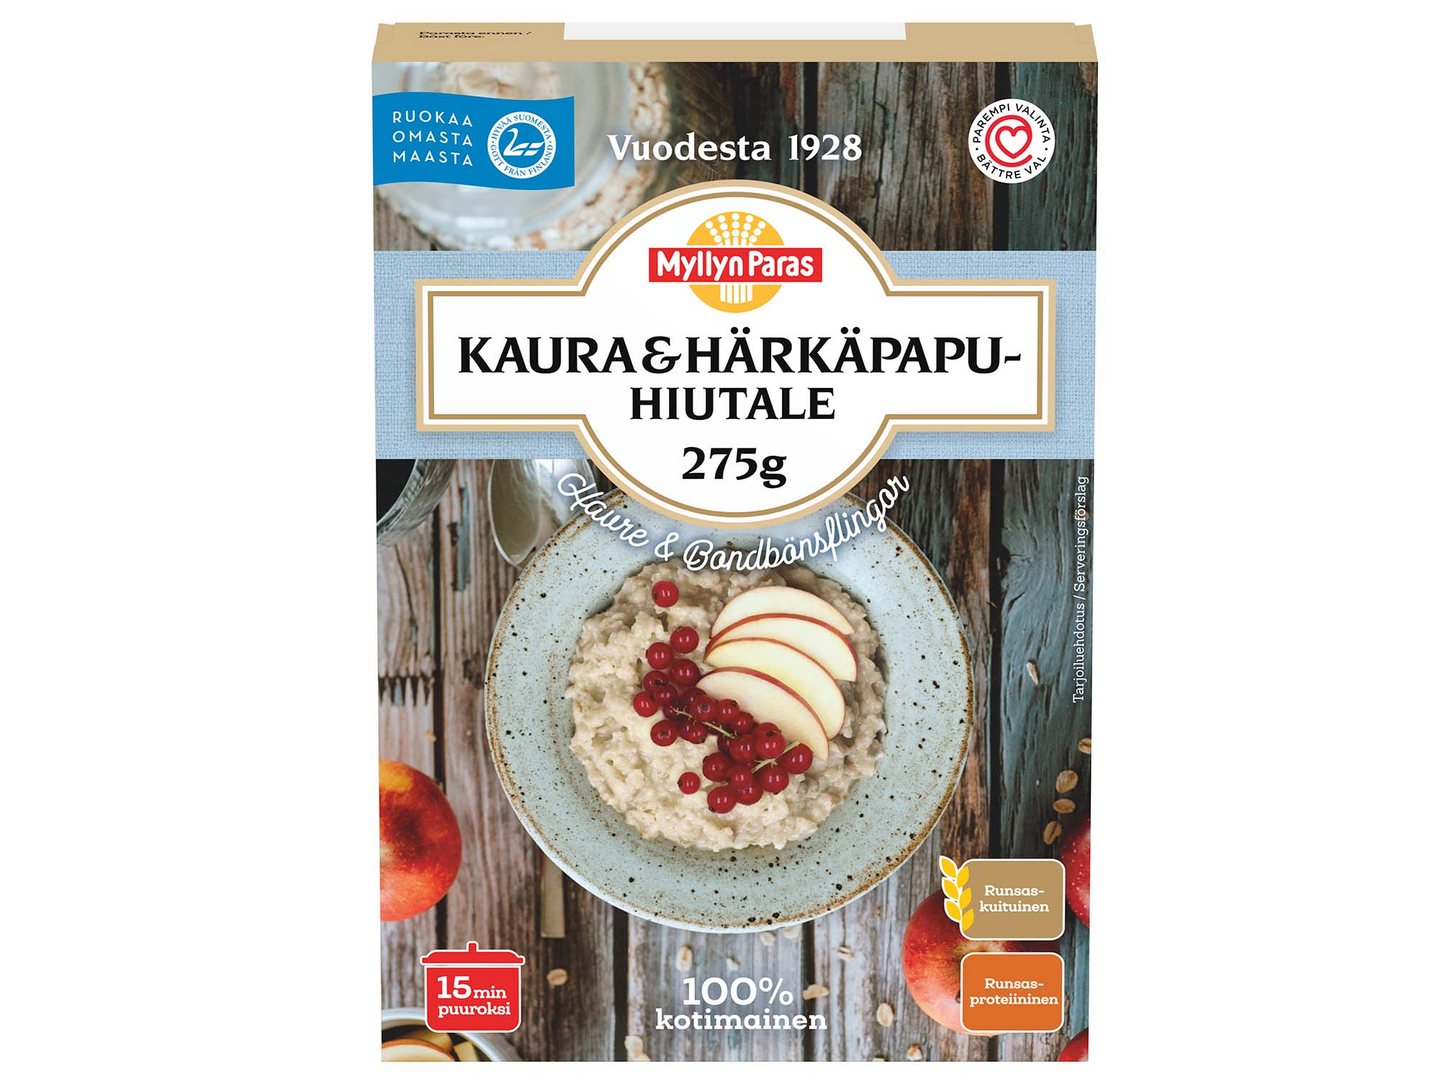 Myllyn Paras Kaura & Härkäpapuhiutale 275g | K-Ruoka Verkkokauppa